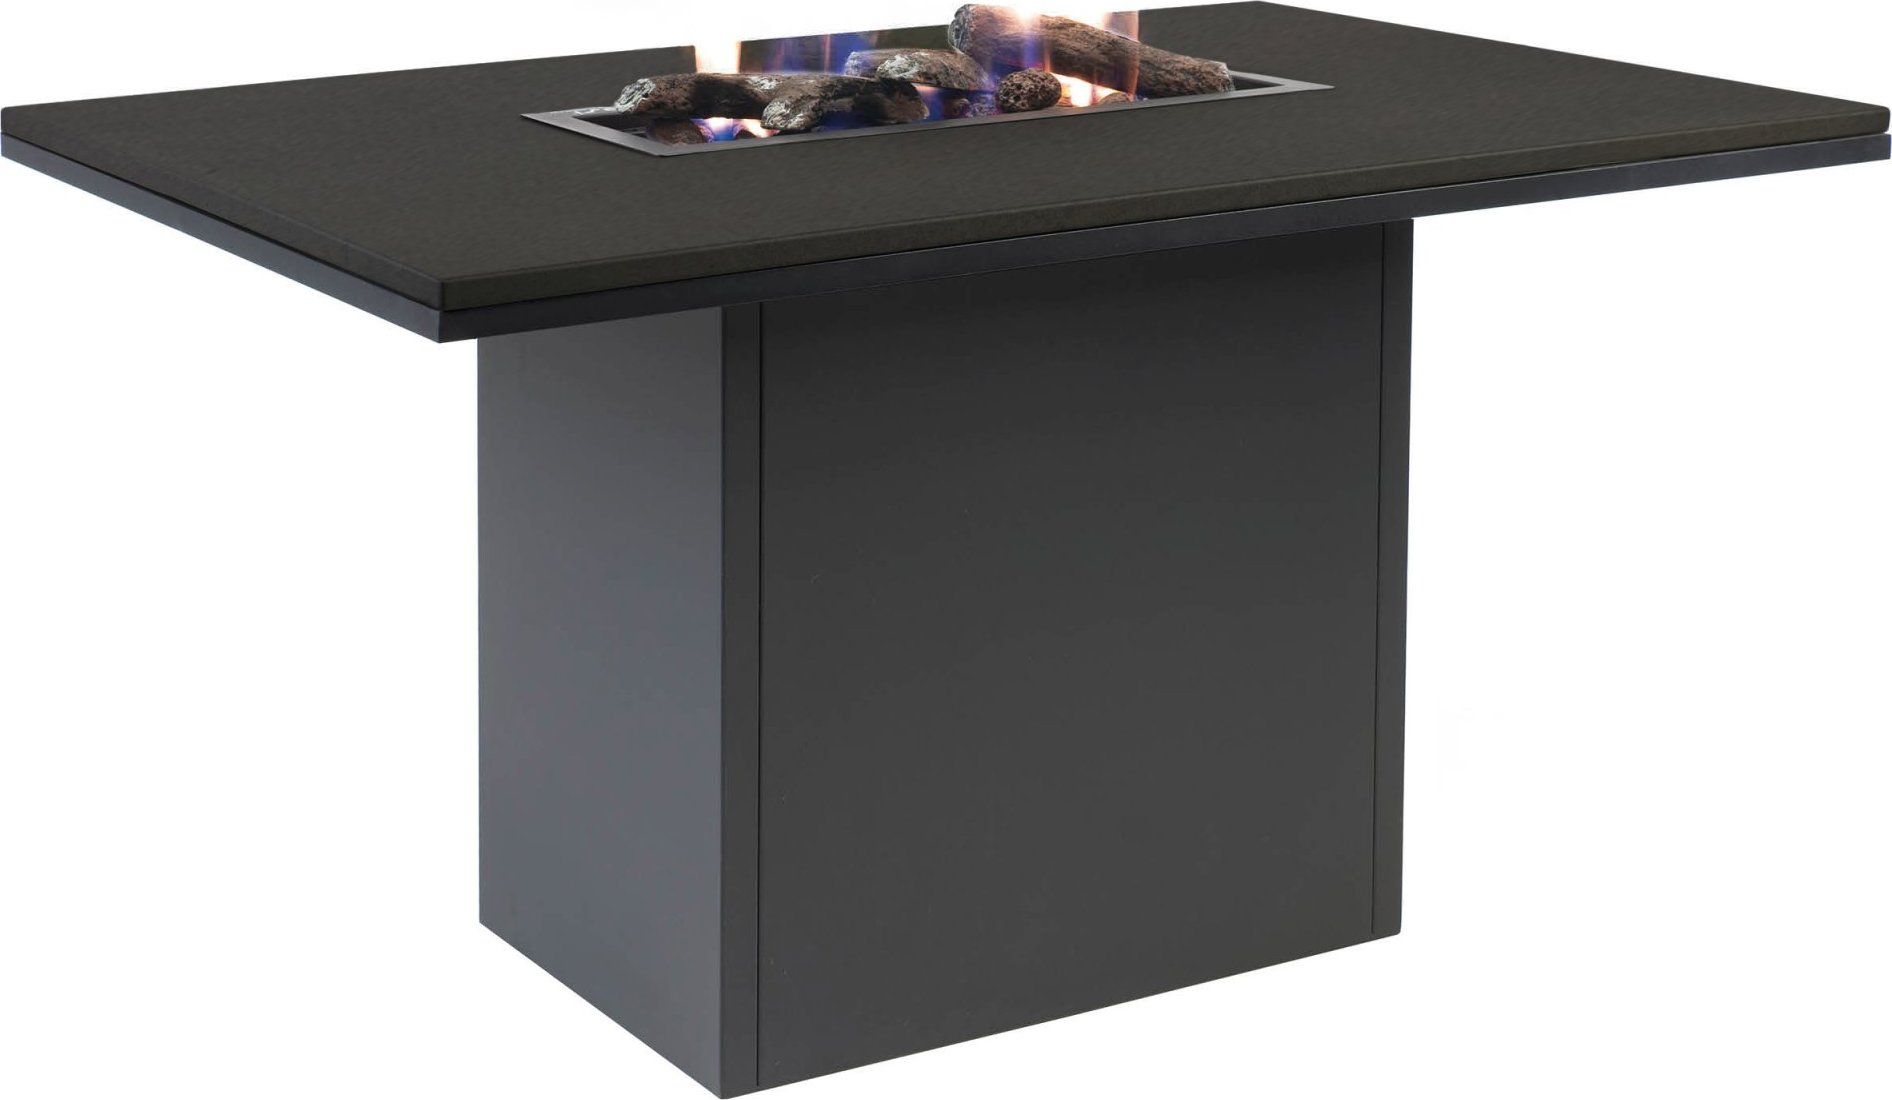 Stůl s plynovým ohništěm COSI- typ Cosiloft 120 vysoký jídelní stůl černý rám / černá deska Mdum - M DUM.cz